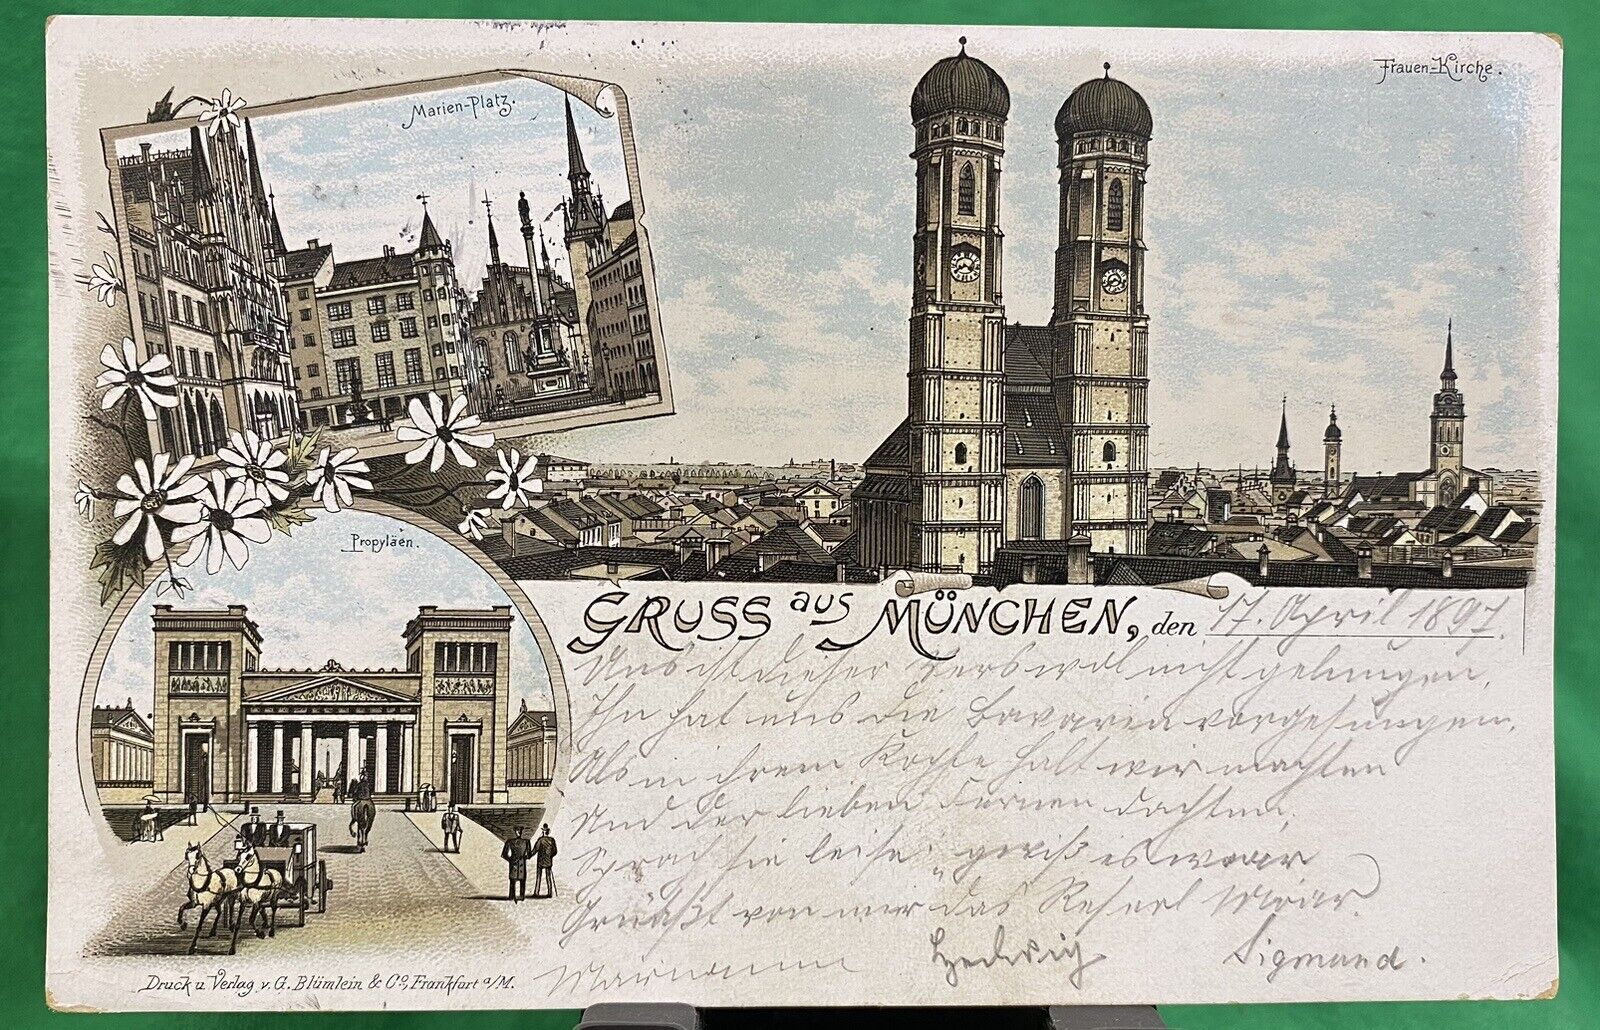 April 1897 German Postcard Gruss aus Munchen Greetings From Munich Antique Card